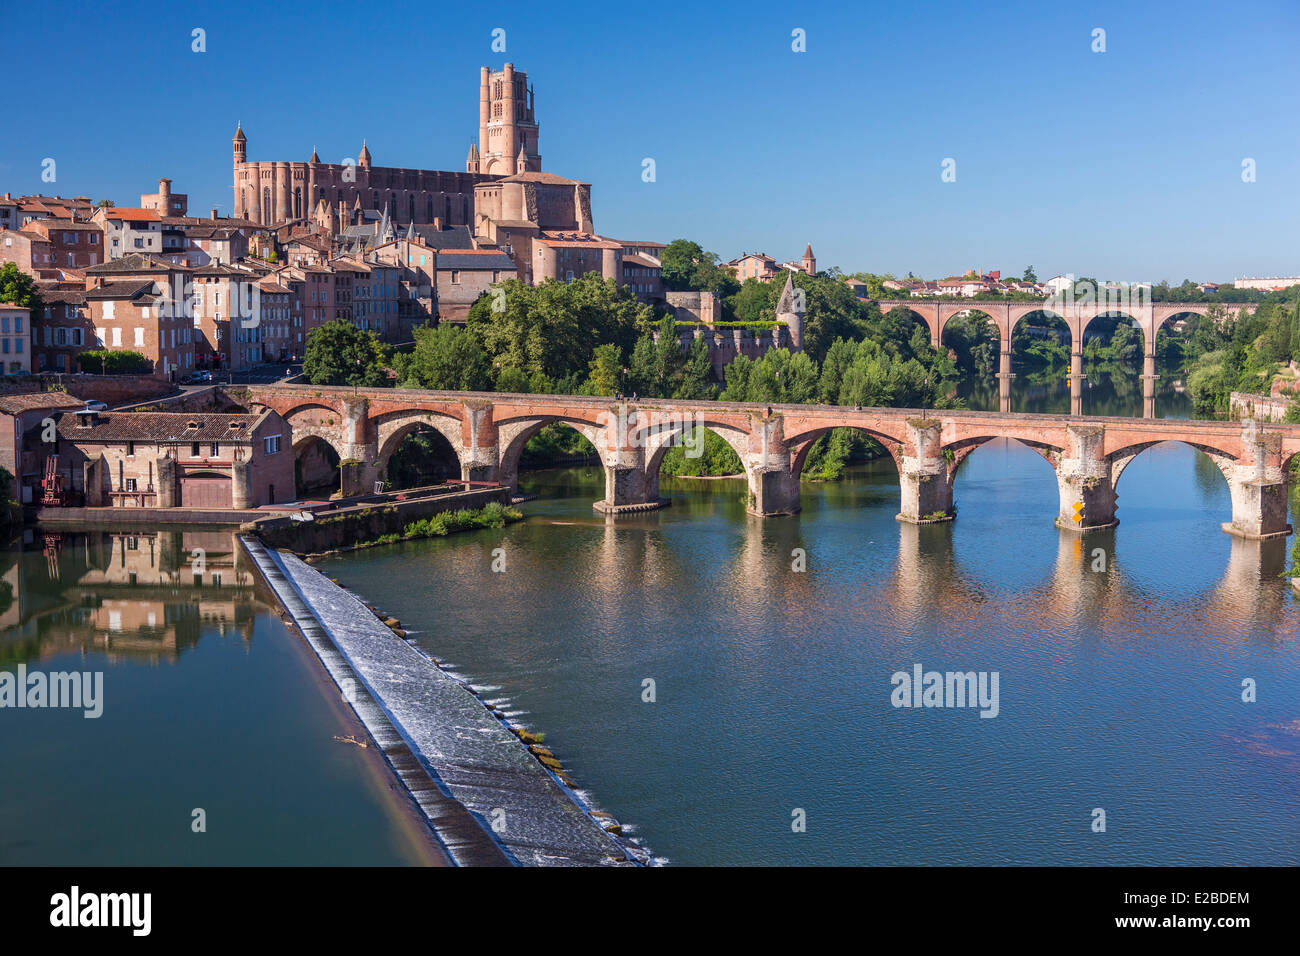 Frankreich, Tarn, Albi, Bischofsstadt, Weltkulturerbe der UNESCO, alte Brücke, die vom 11. Jahrhundert und die Kathedrale Ste Cecile Stockfoto